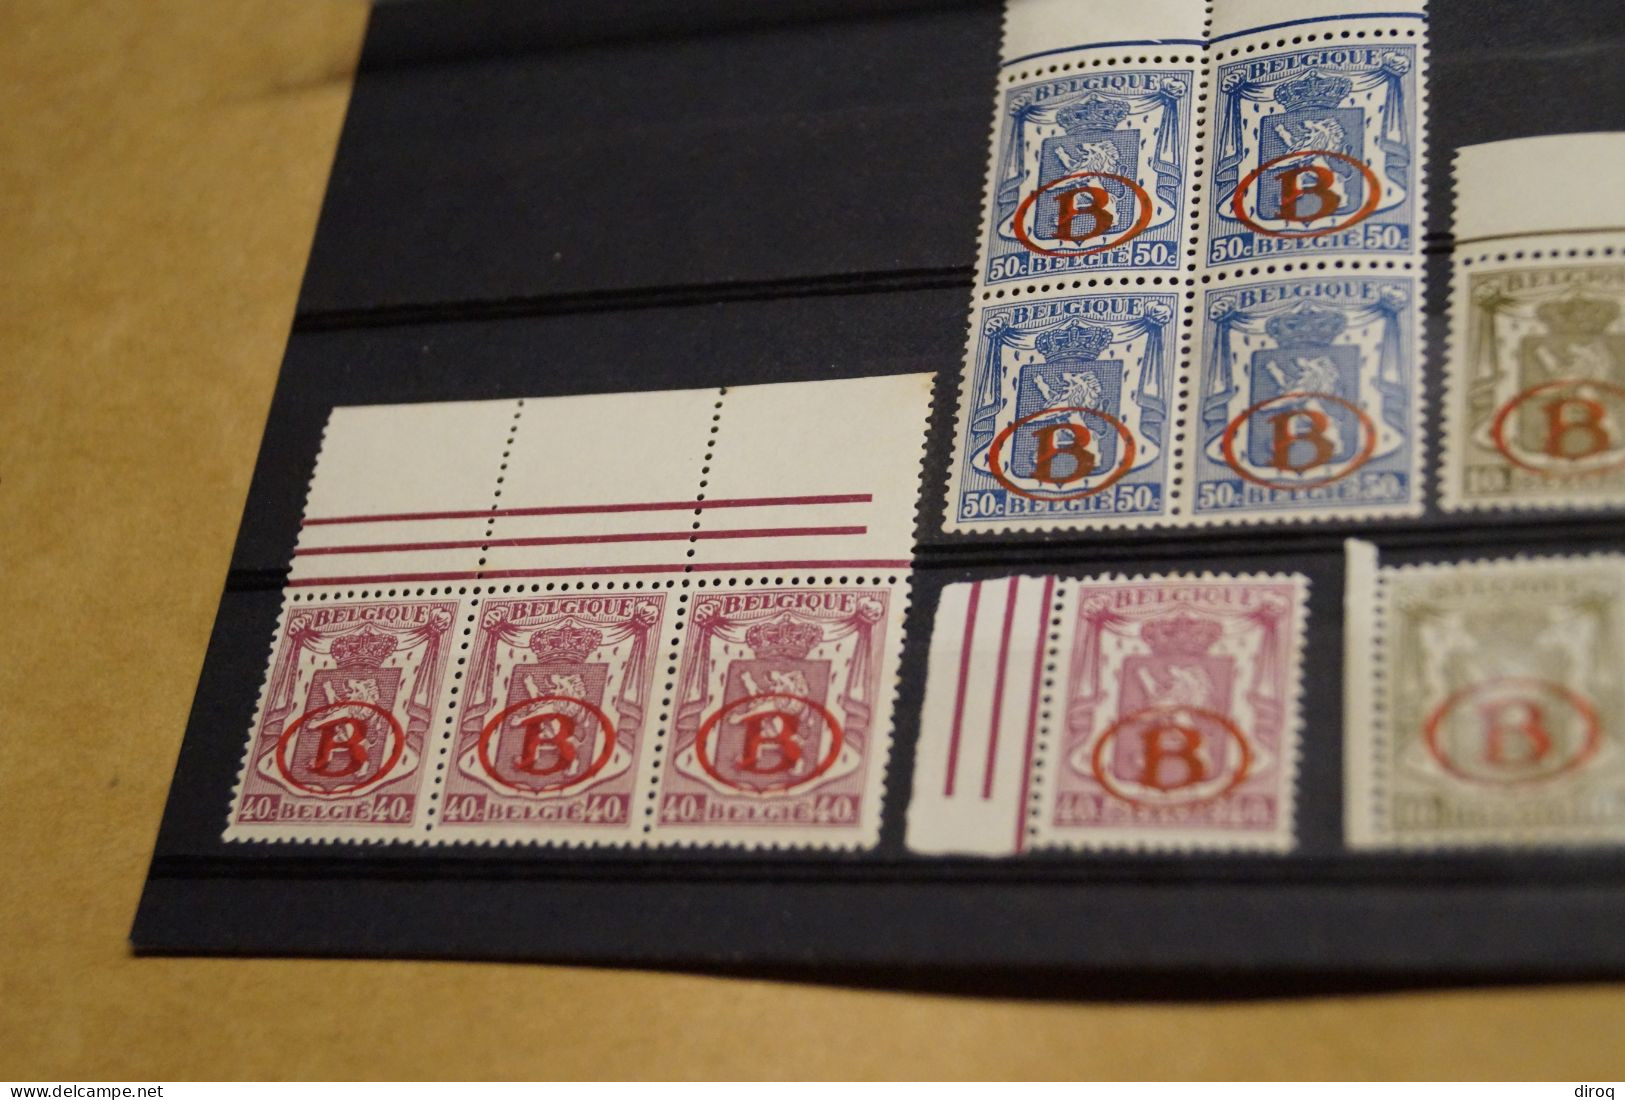 lot de 24 timbres,très bonne affaire,état strictement neuf,chemin de fer ,collection